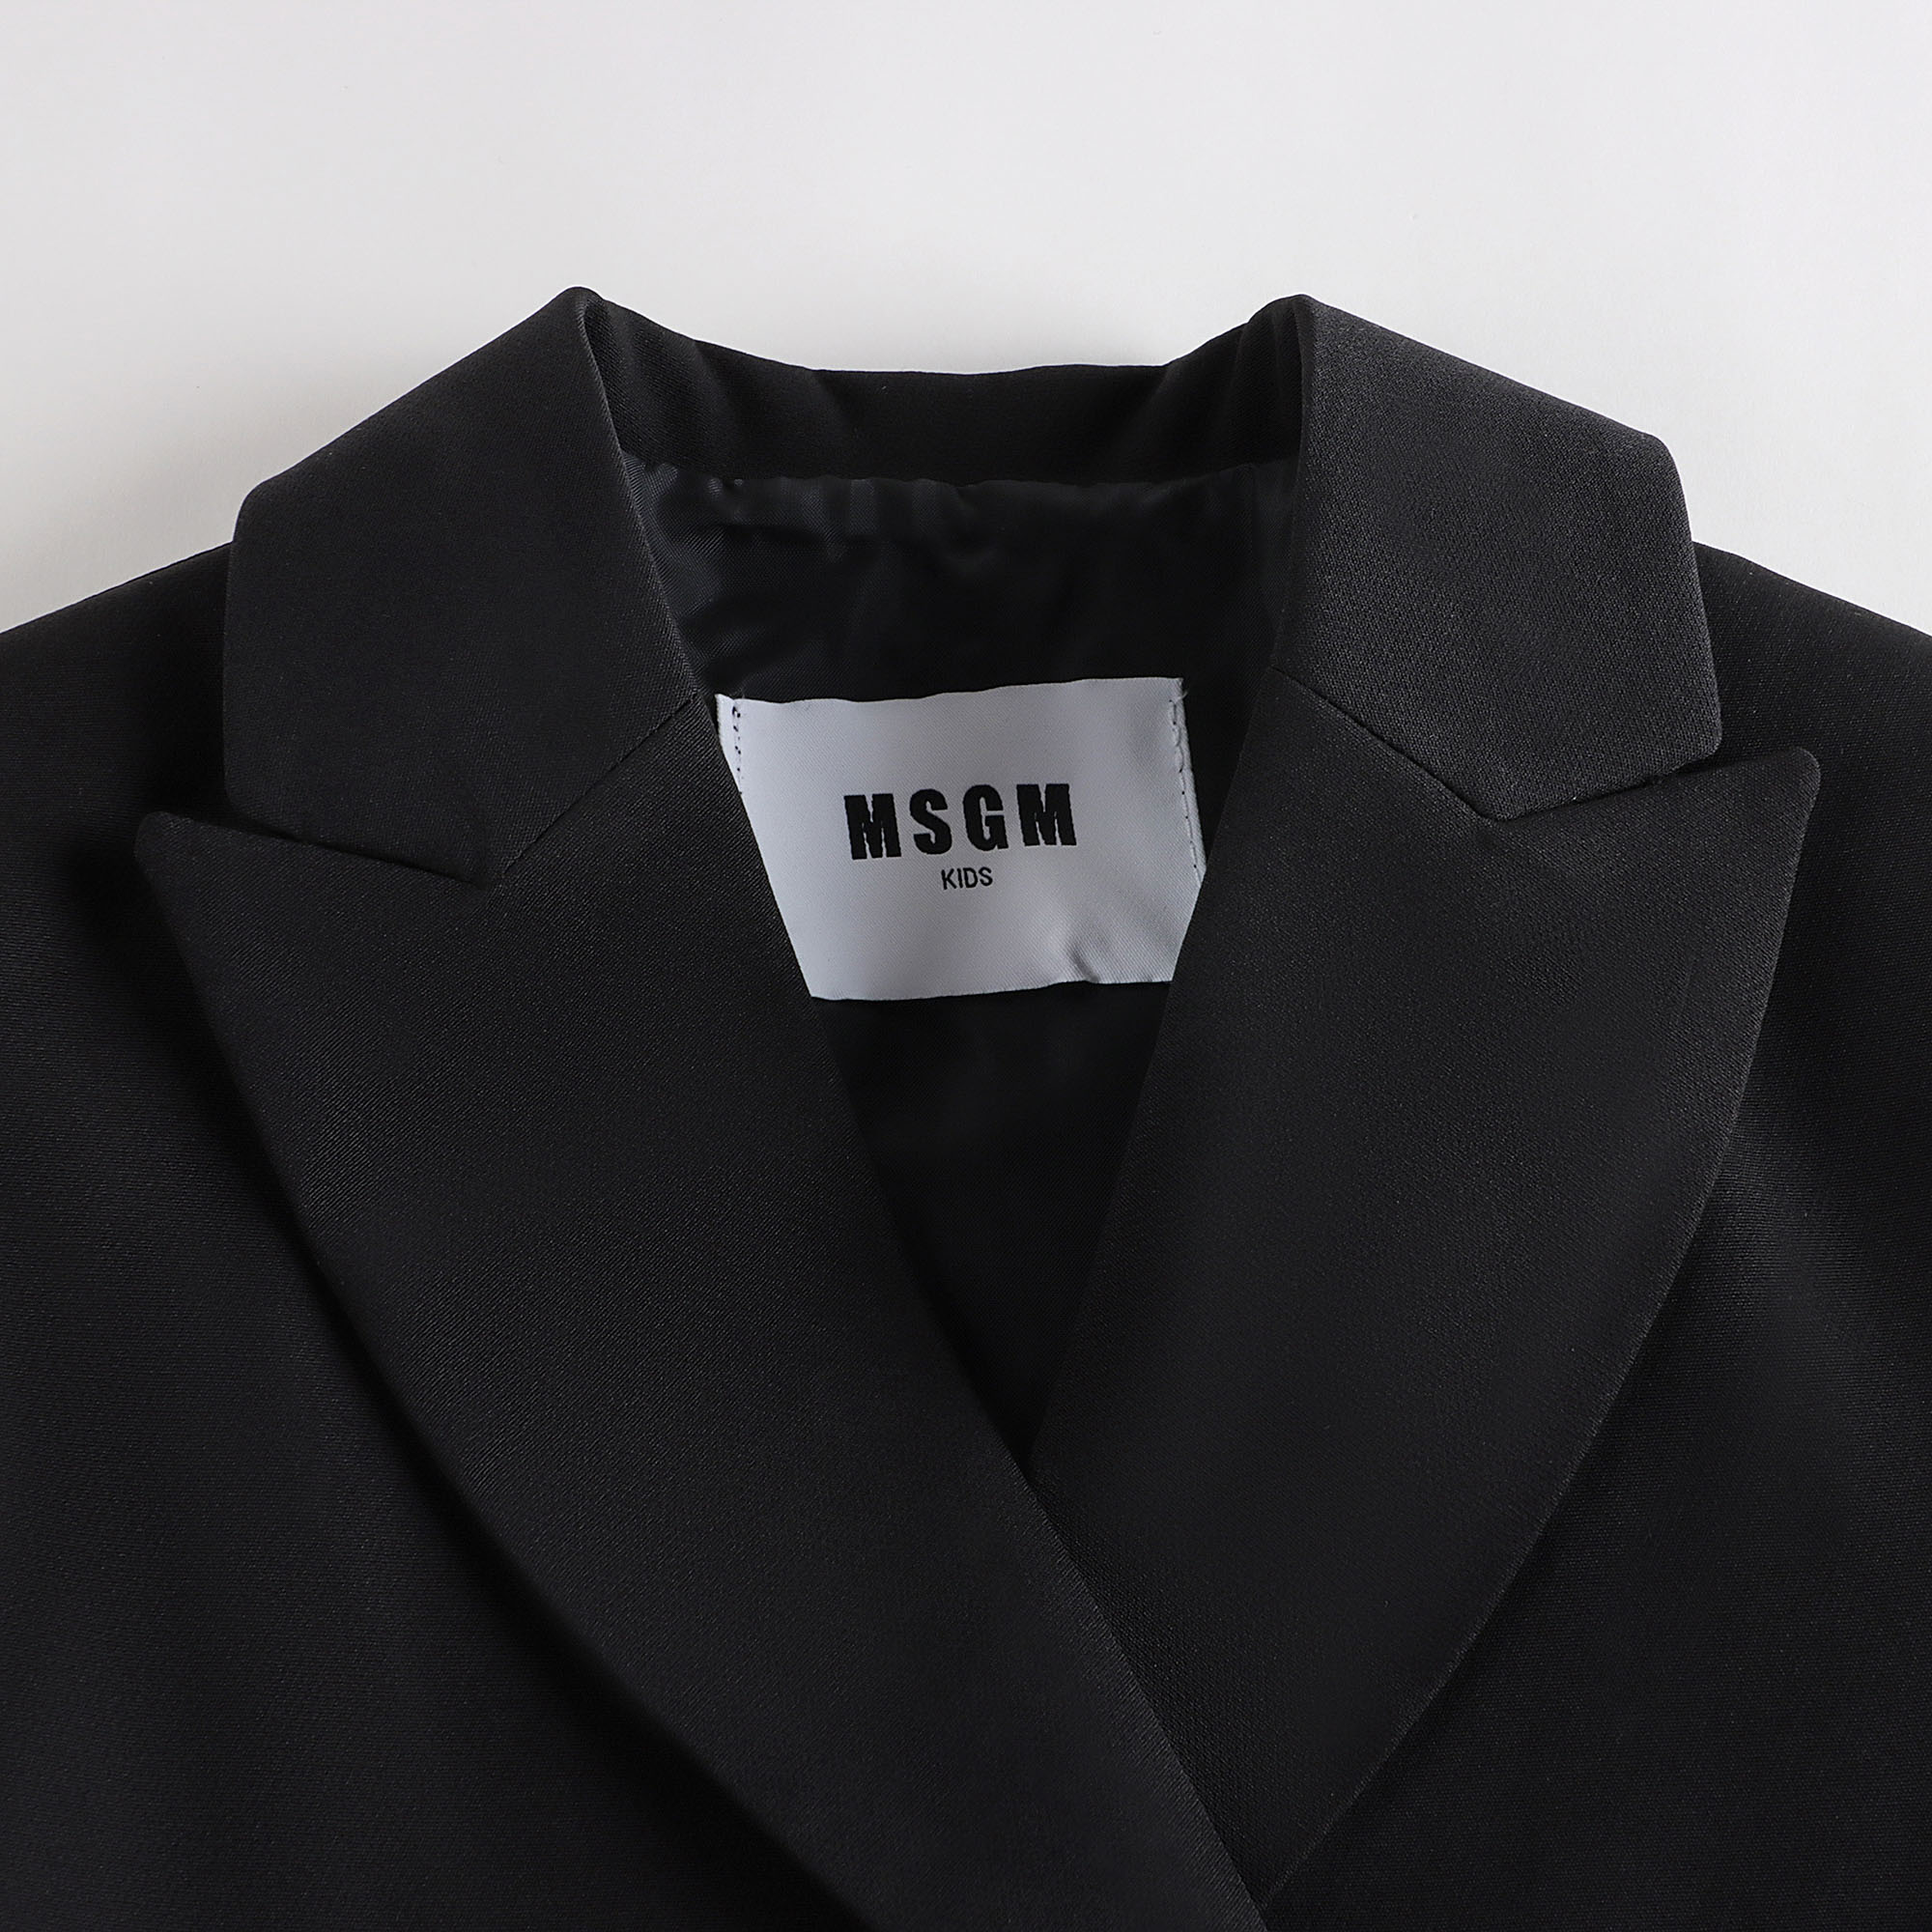 Girls Black Suit Coat